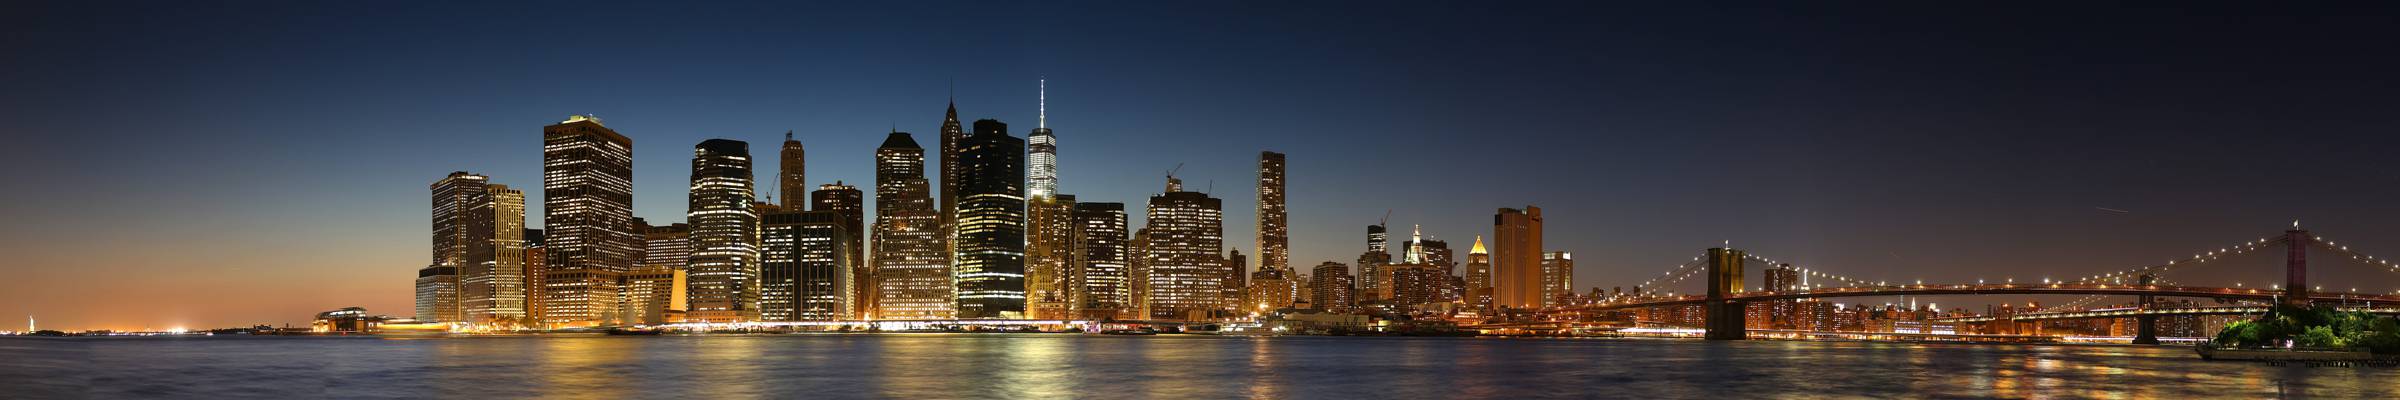 在夜间,曼哈顿,帝国,克莱斯勒大厦,曼哈顿桥高清壁纸布鲁克林桥照片